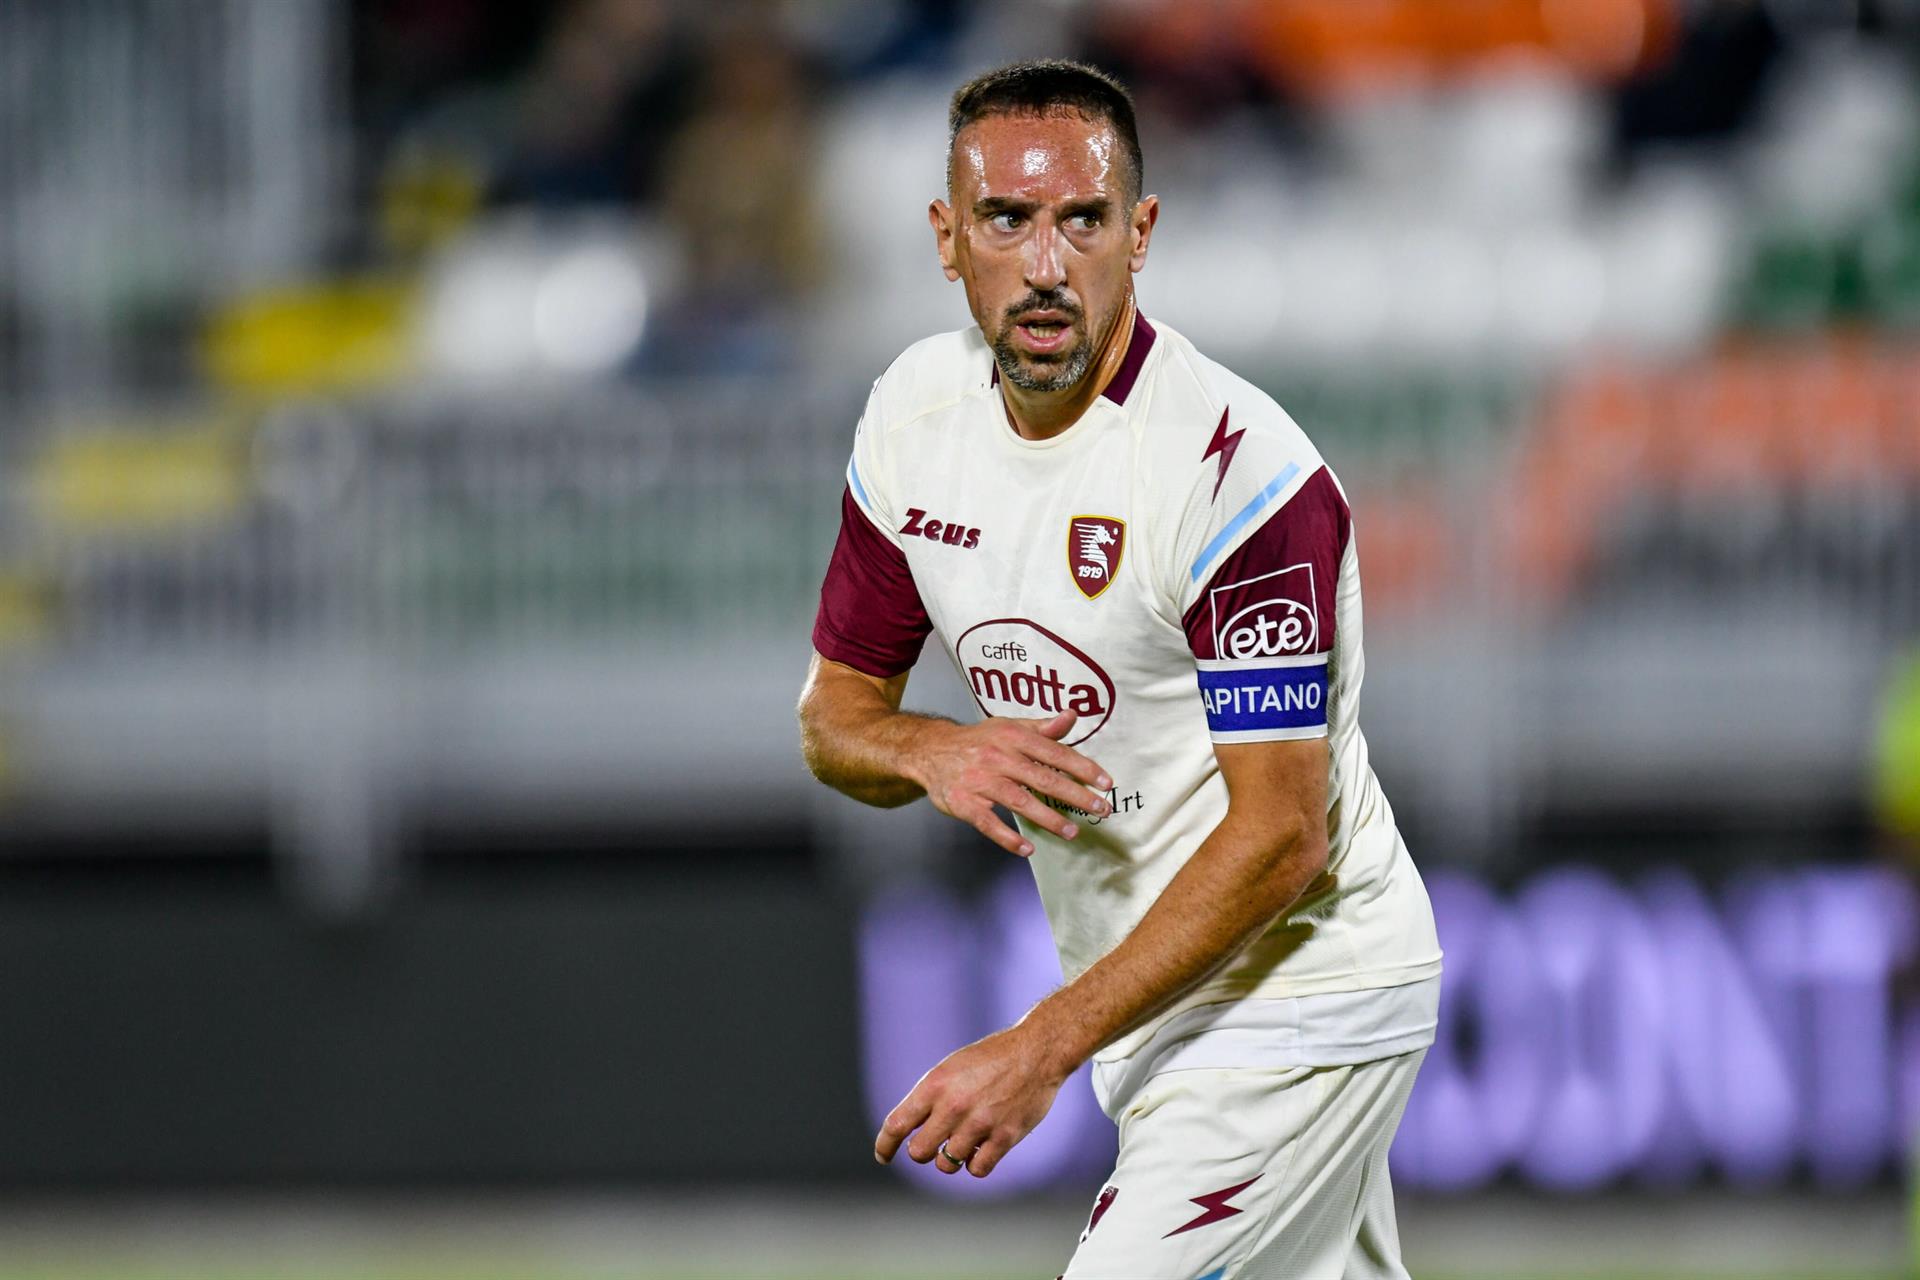 La figura del fútbol francés Frank Ribery sufrió una contusión cerebral tras accidente de coche